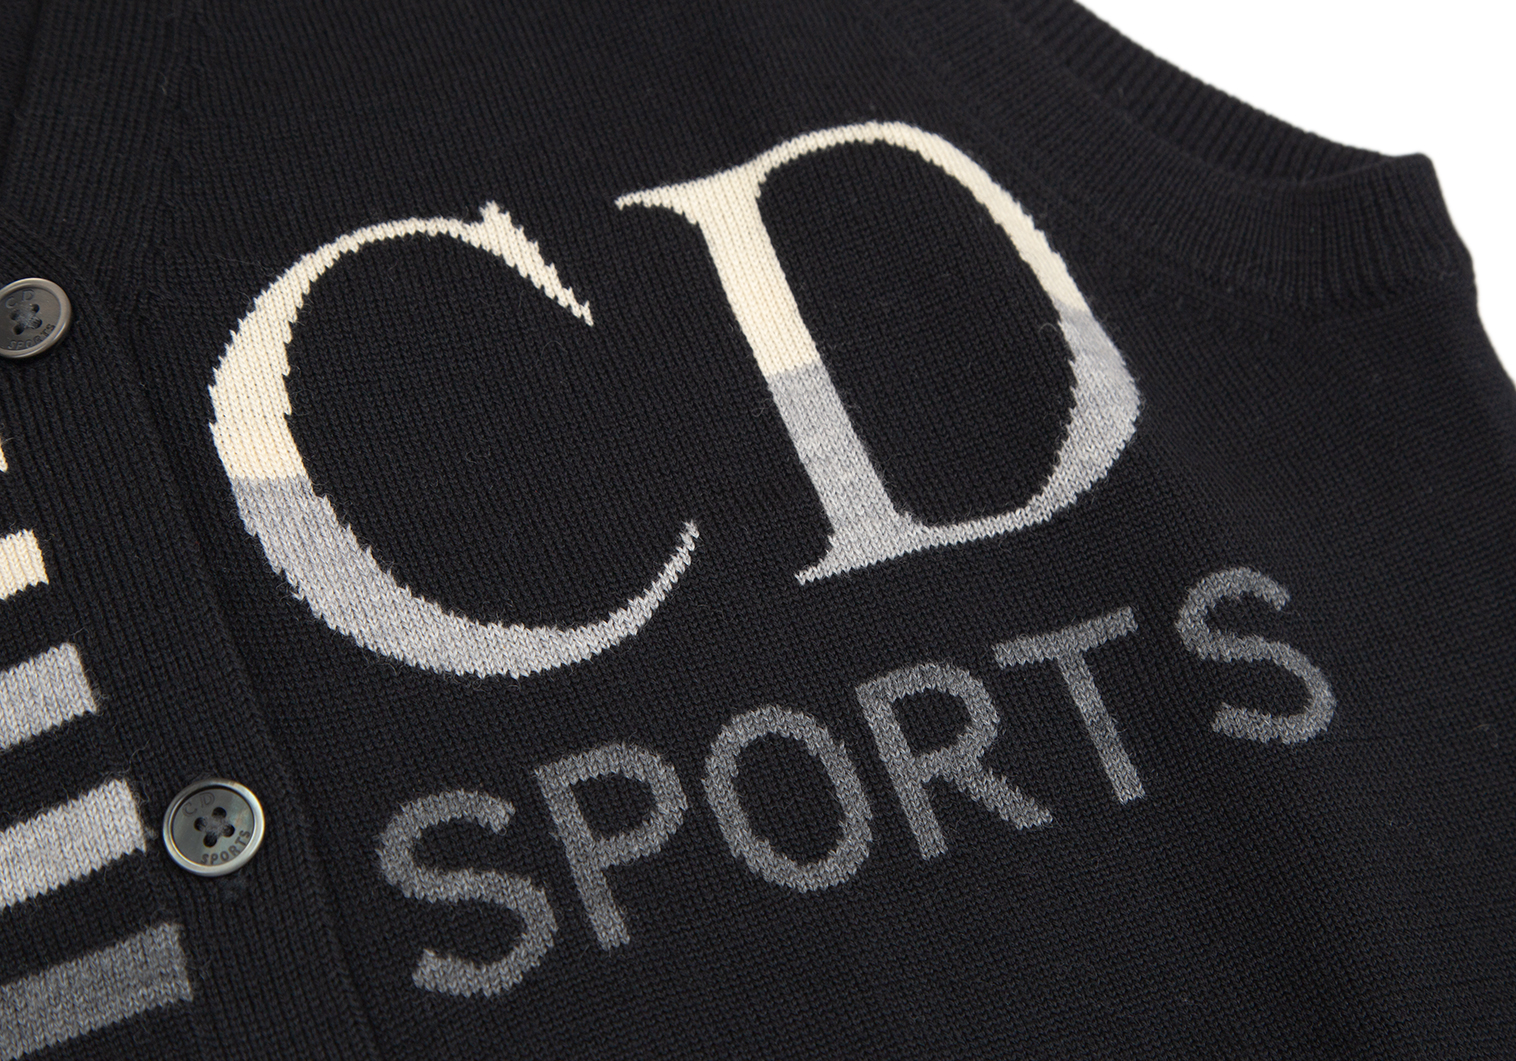 クリスチャンディオールスポーツChristian Dior SPORTS ロゴボーダー